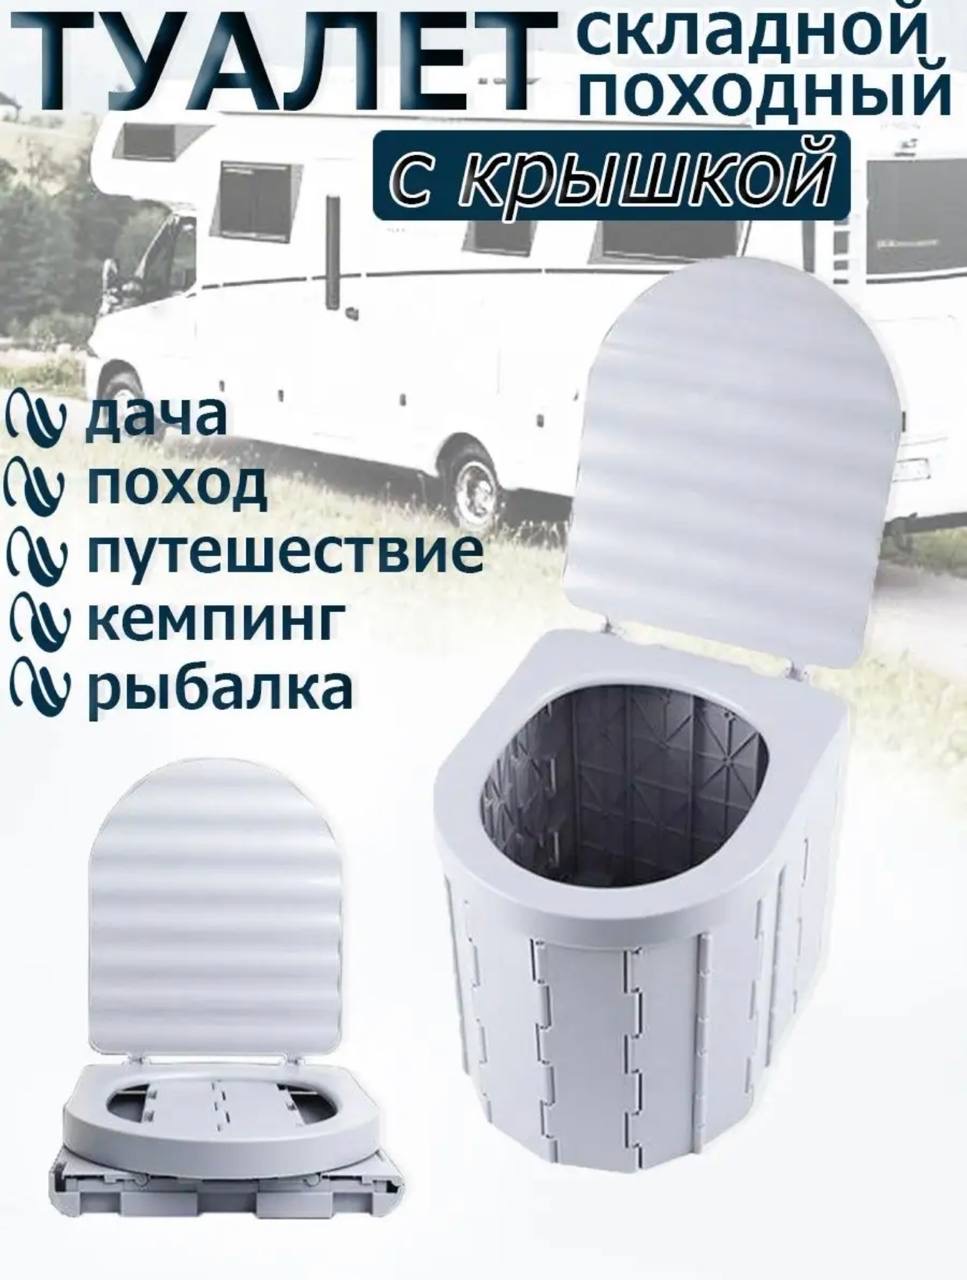 Складной портативный биотуалет с крышкой - купить в Москве, цены на Мегамаркет | 600018501311